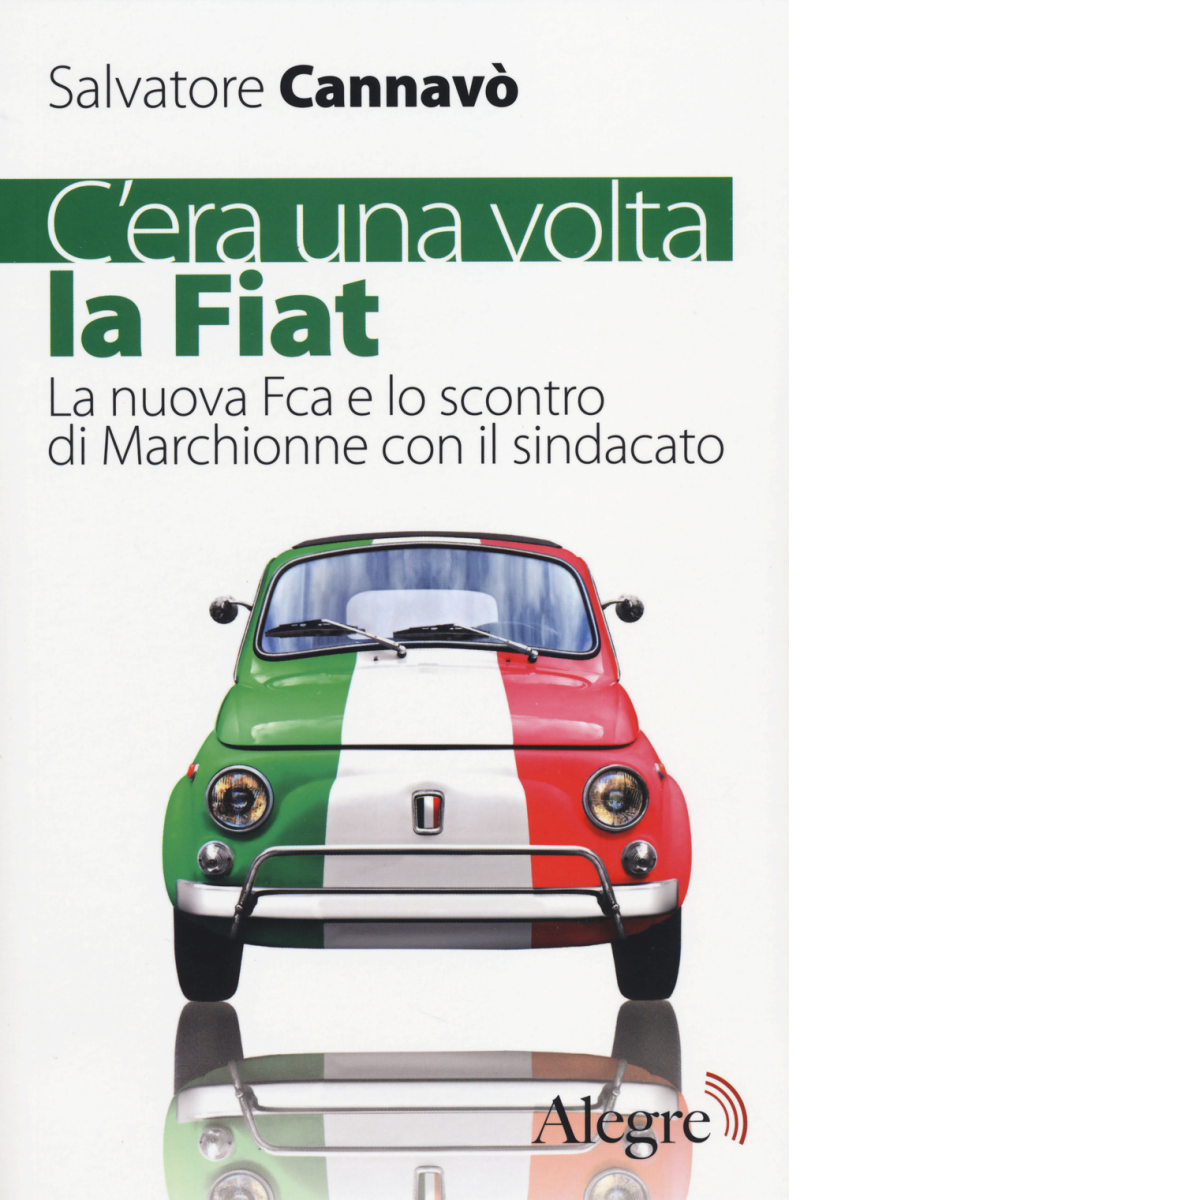 C'era una volta la Fiat di Salvatore Cannav? - edizioni alegre, 2014